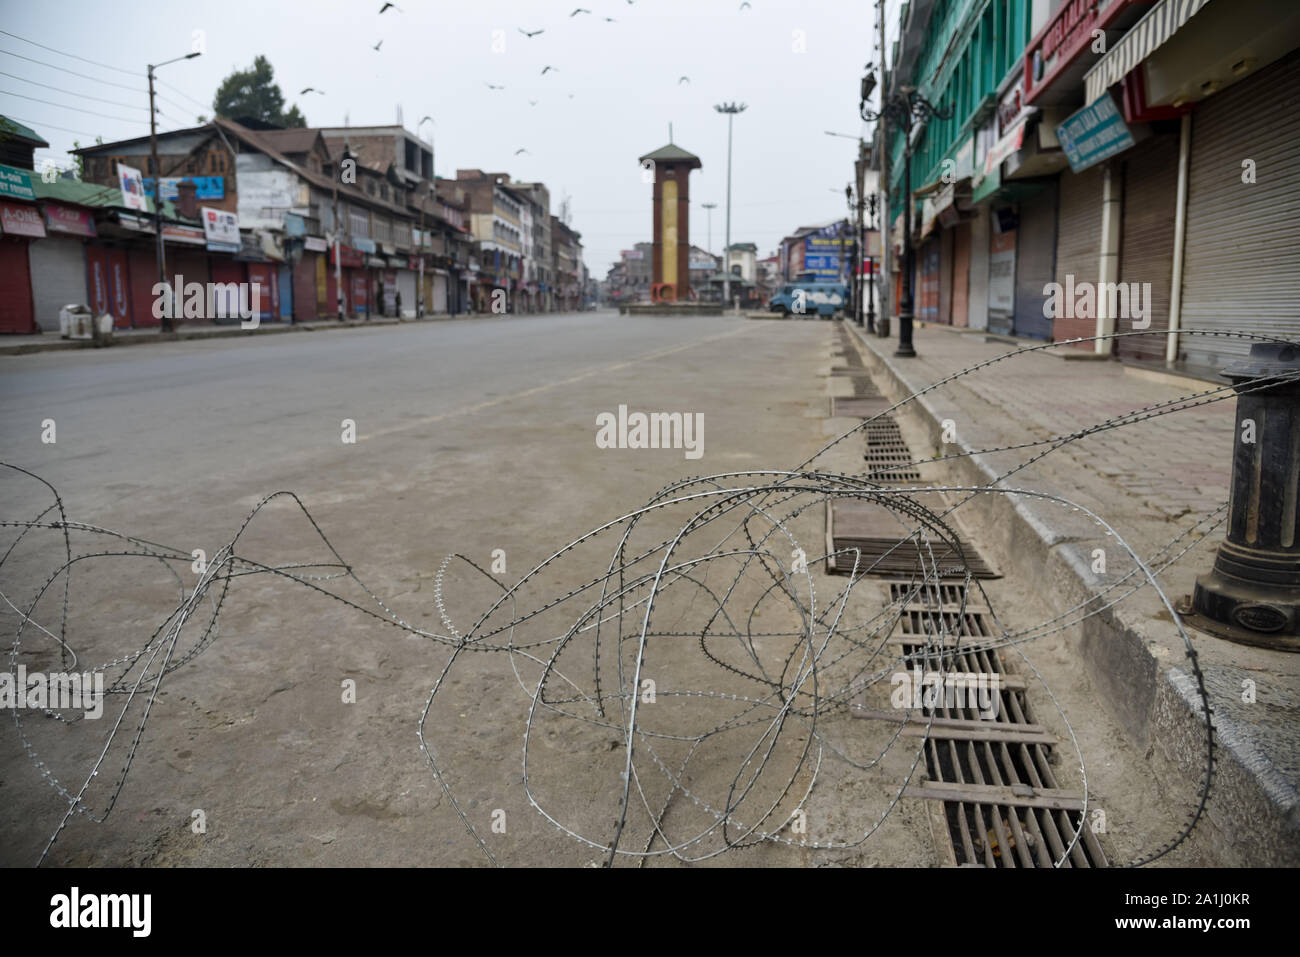 Calle desierta con alambre de serpentina durante las restricciones en Srinagar.Después de la revocación del artículo 370 que otorga el estatus especial de Jammu & Kashmir, autoridades estatales han impuesto restricciones a través de Cachemira para impedir protestas. Foto de stock